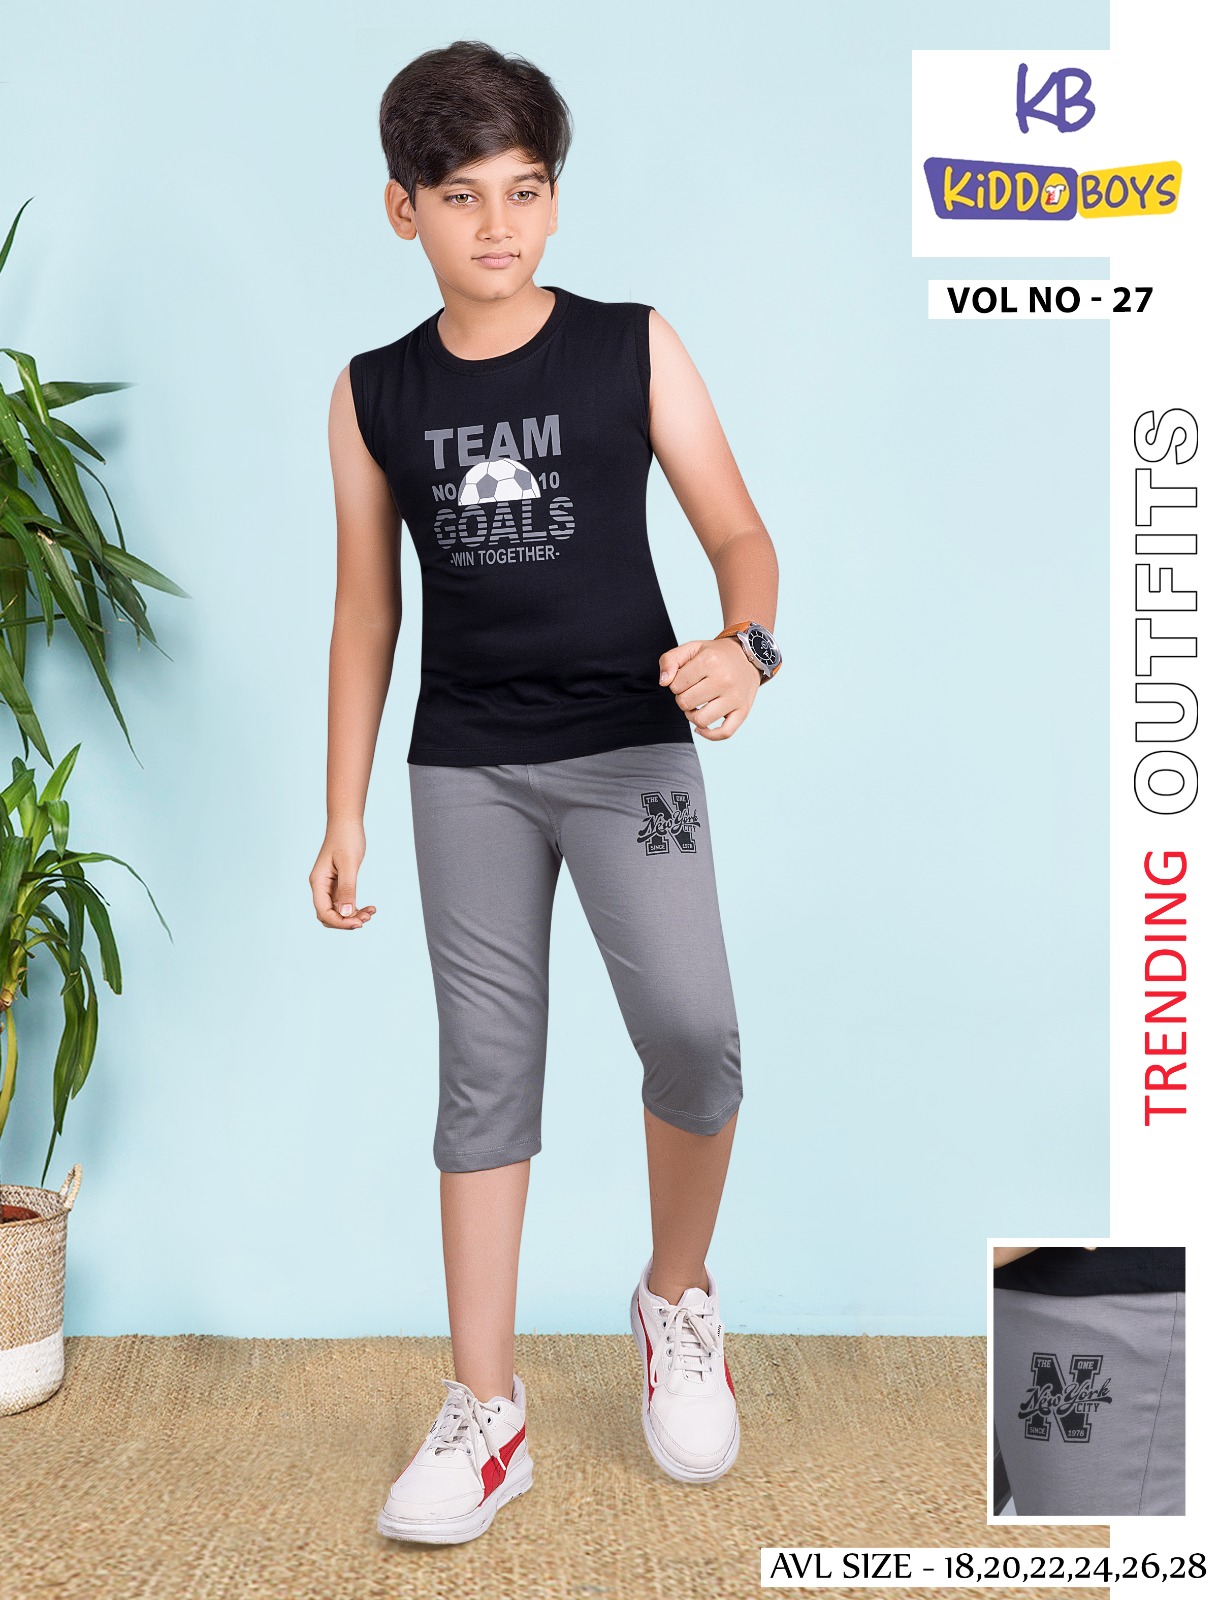 Kiddo Boys Vol No 27 Boys Capri Night Suit Catalog Lowest Price